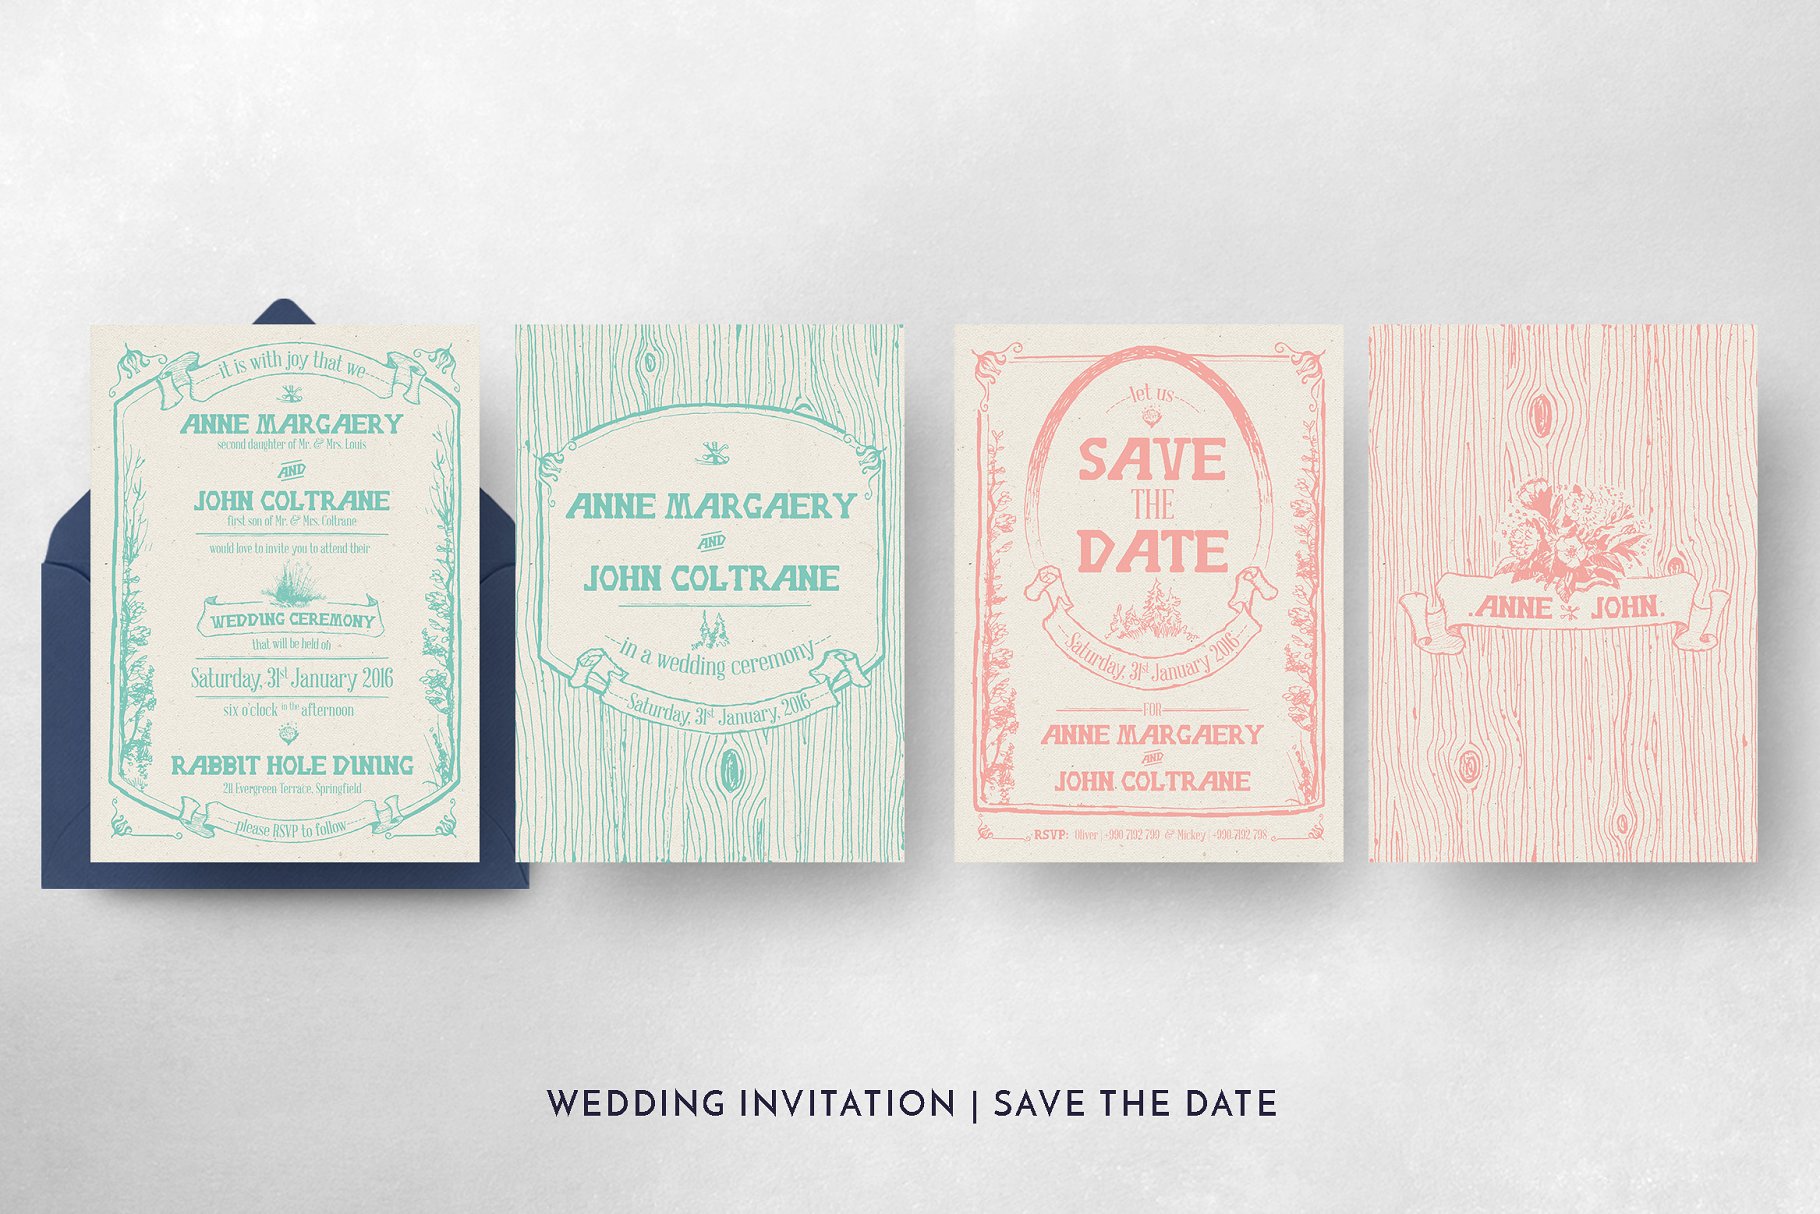 异想天开的森林婚礼设计物料模板 Whimsical Forest Wedding Suite插图(3)